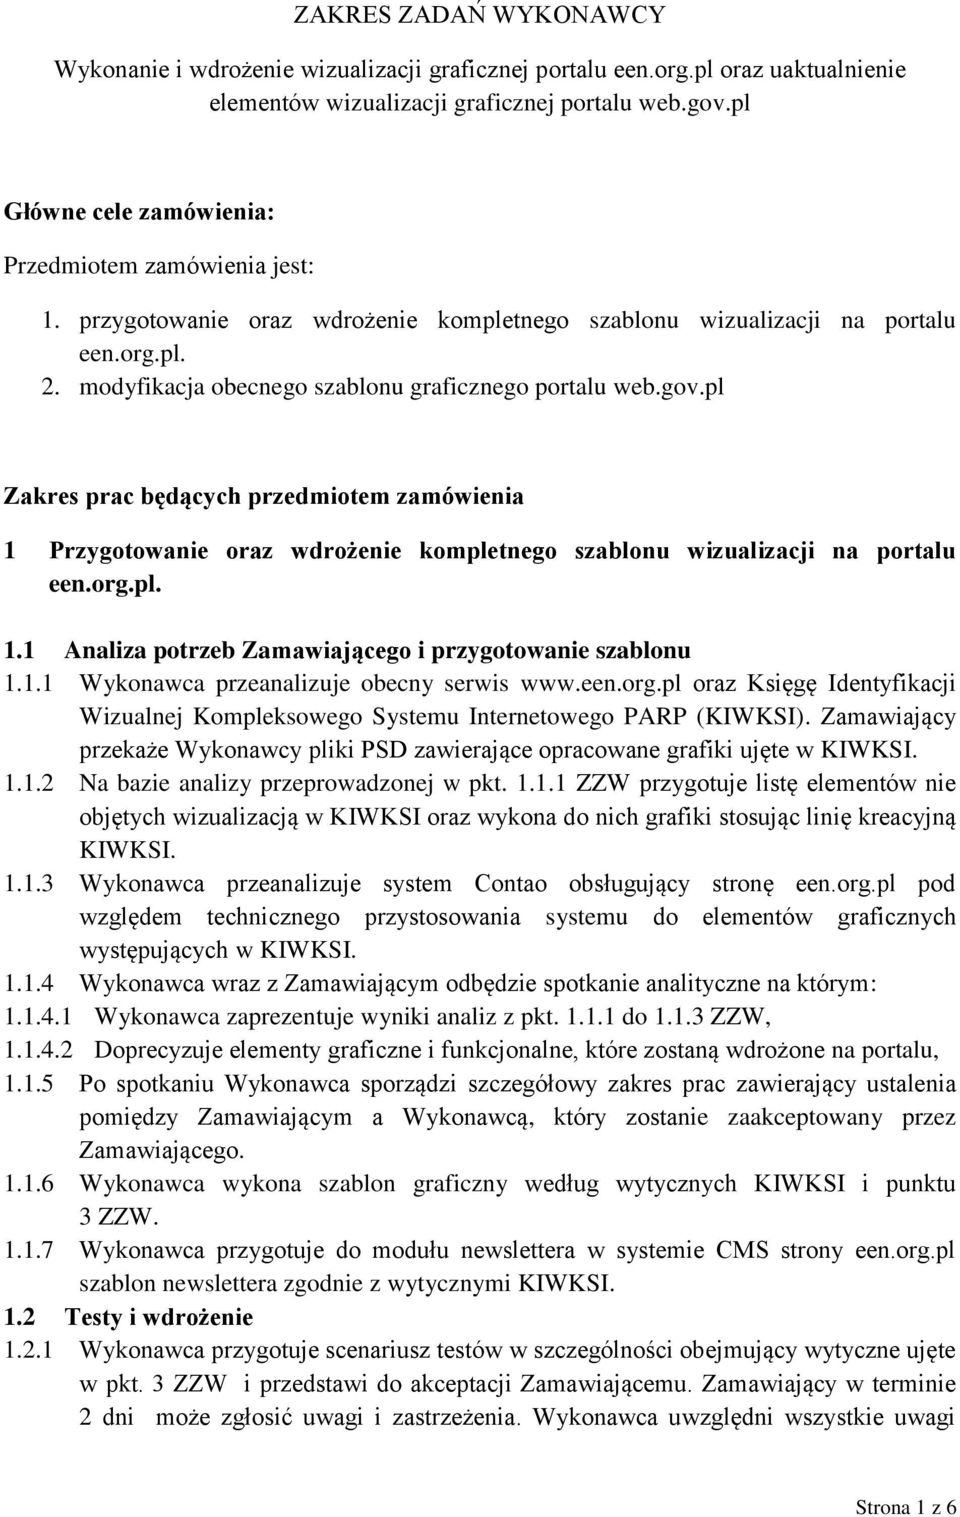 modyfikacja obecnego szablonu graficznego portalu web.gov.pl Zakres prac będących przedmiotem zamówienia 1 Przygotowanie oraz wdrożenie kompletnego szablonu wizualizacji na portalu een.org.pl. 1.1 Analiza potrzeb Zamawiającego i przygotowanie szablonu 1.